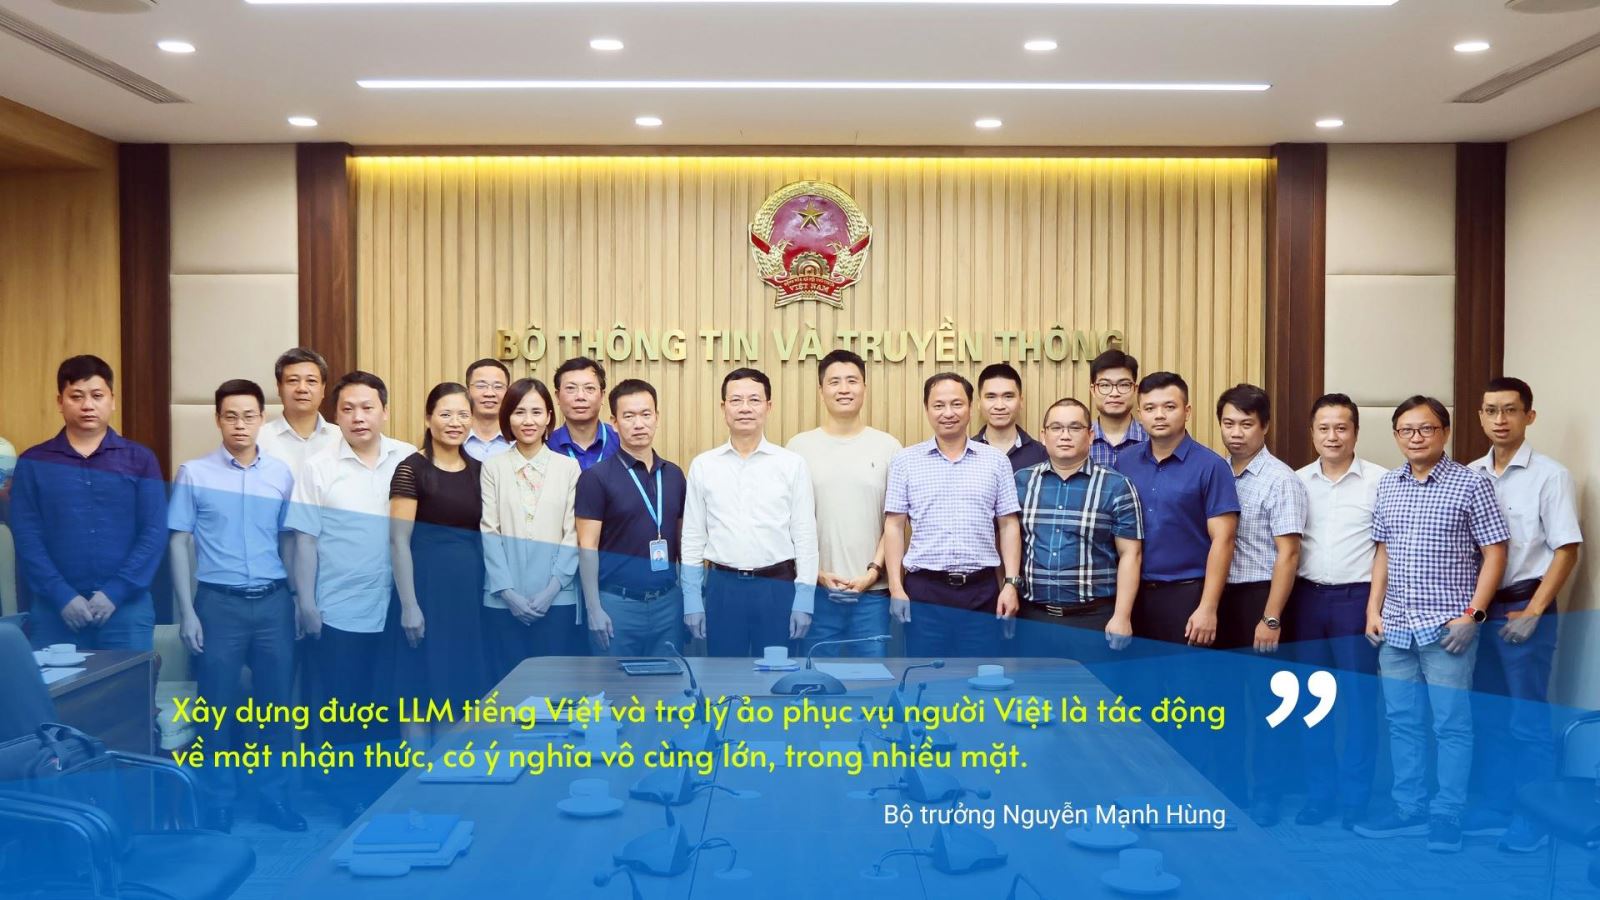 Các doanh nghiệp tiên phong phát triển Mô hình ngôn ngữ lớn tiếng Việt và trợ lý ảo Việt Nam